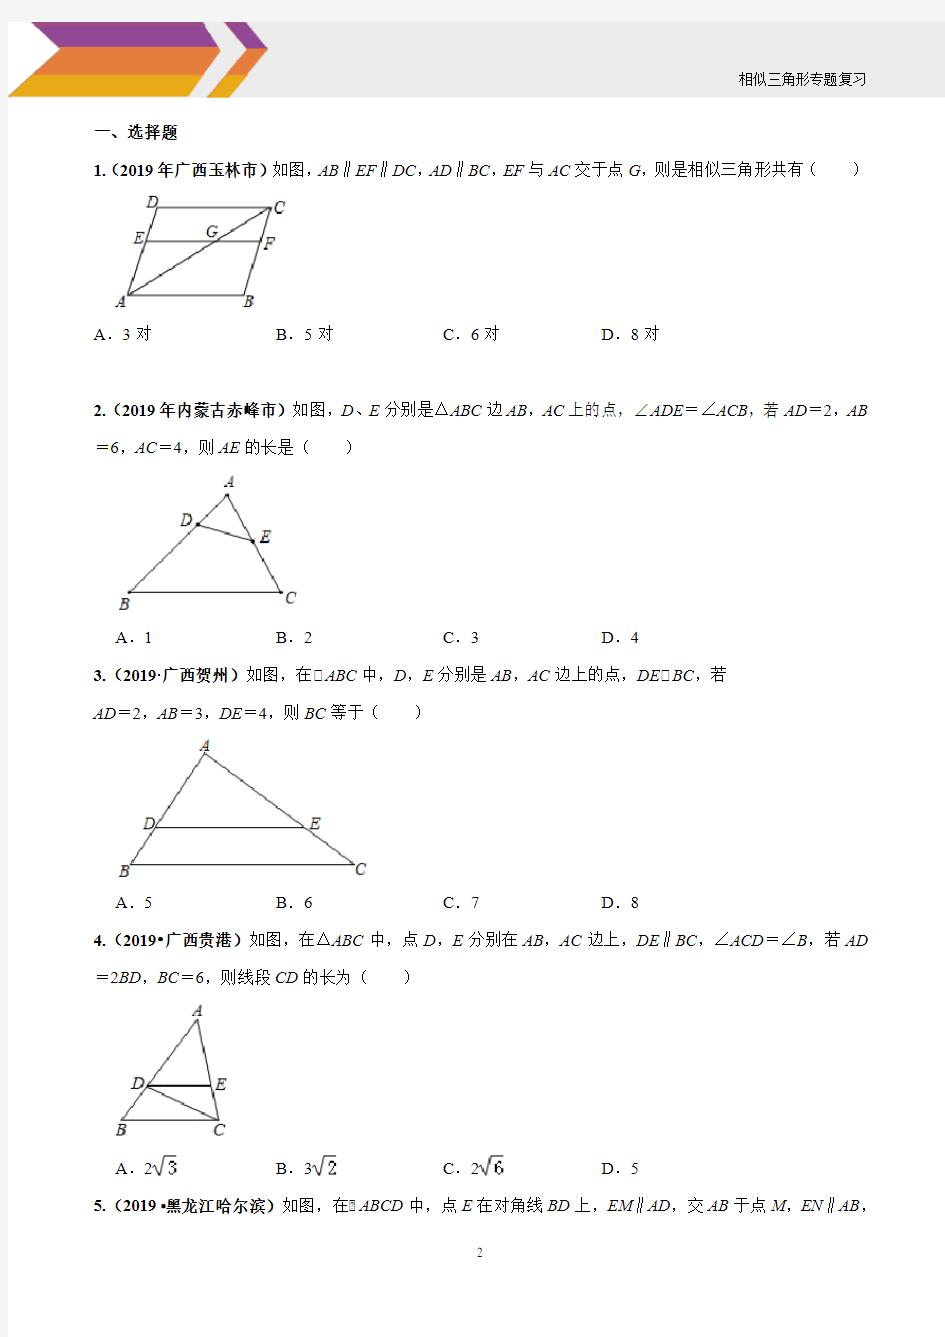 相似三角形判定与性质(10.23)